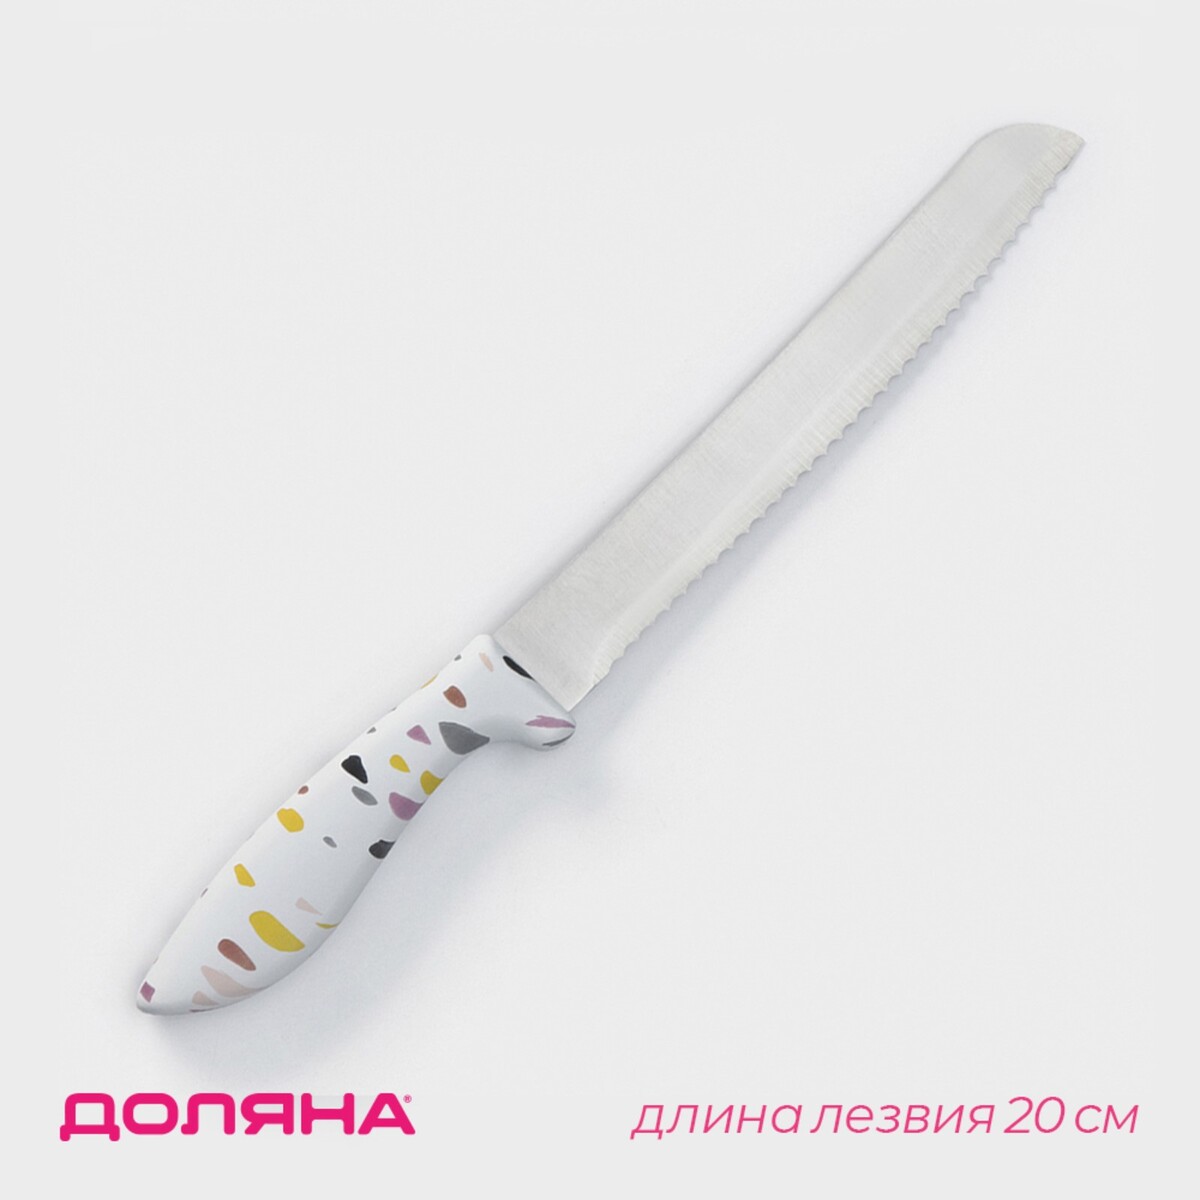 Нож для хлеба доляна sparkle, лезвие 20 см, цвет белый нож разделочный доляна sparkle лезвие 20 см белый